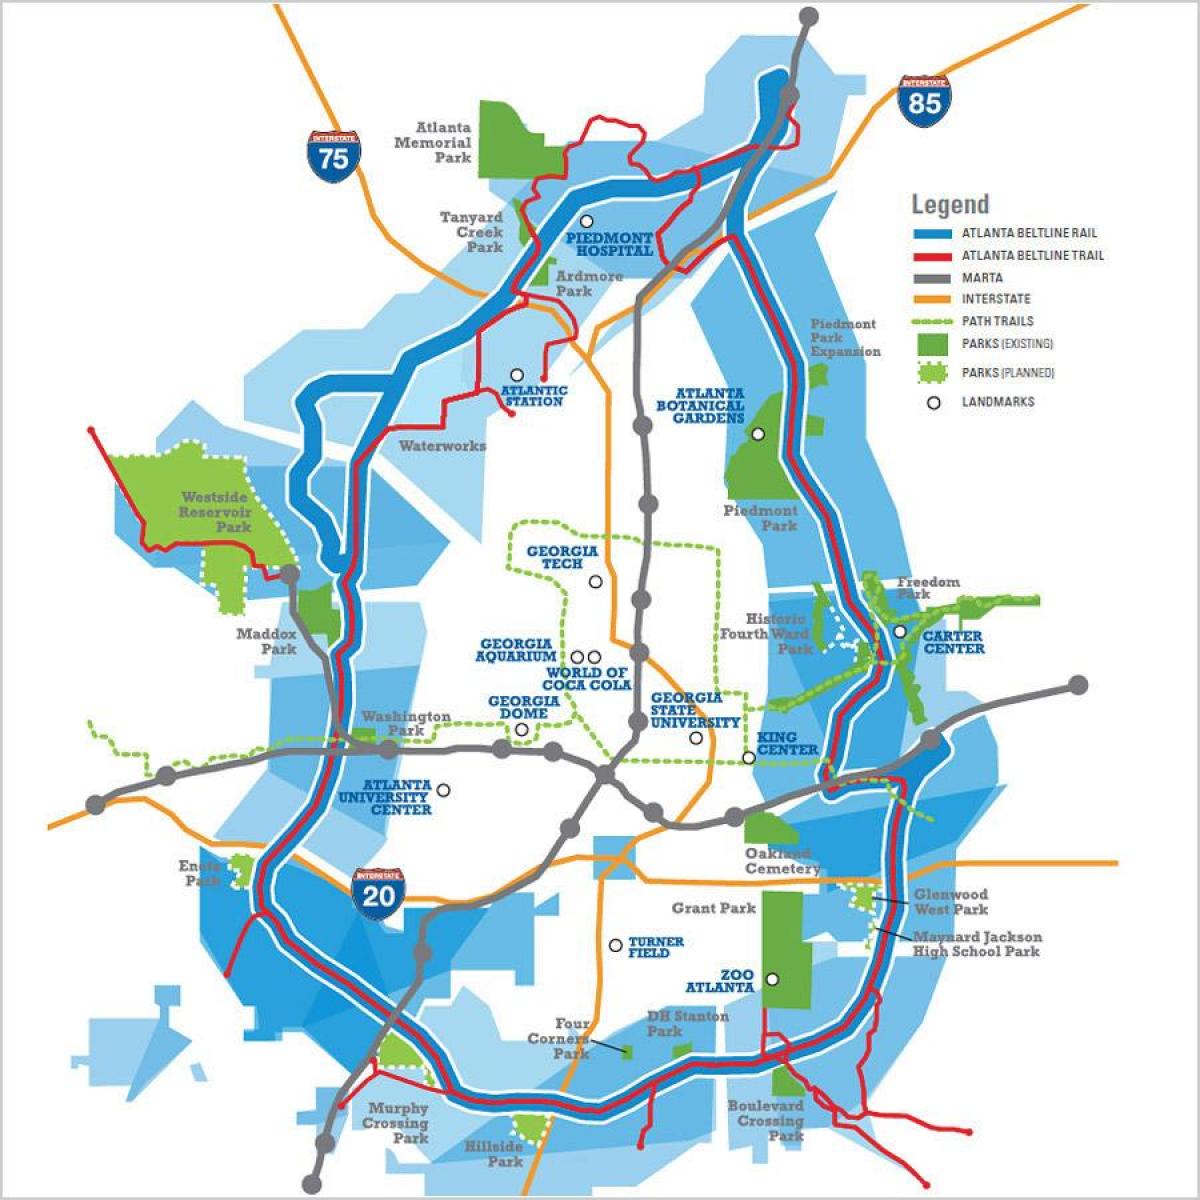 Atlanta beltline mapě